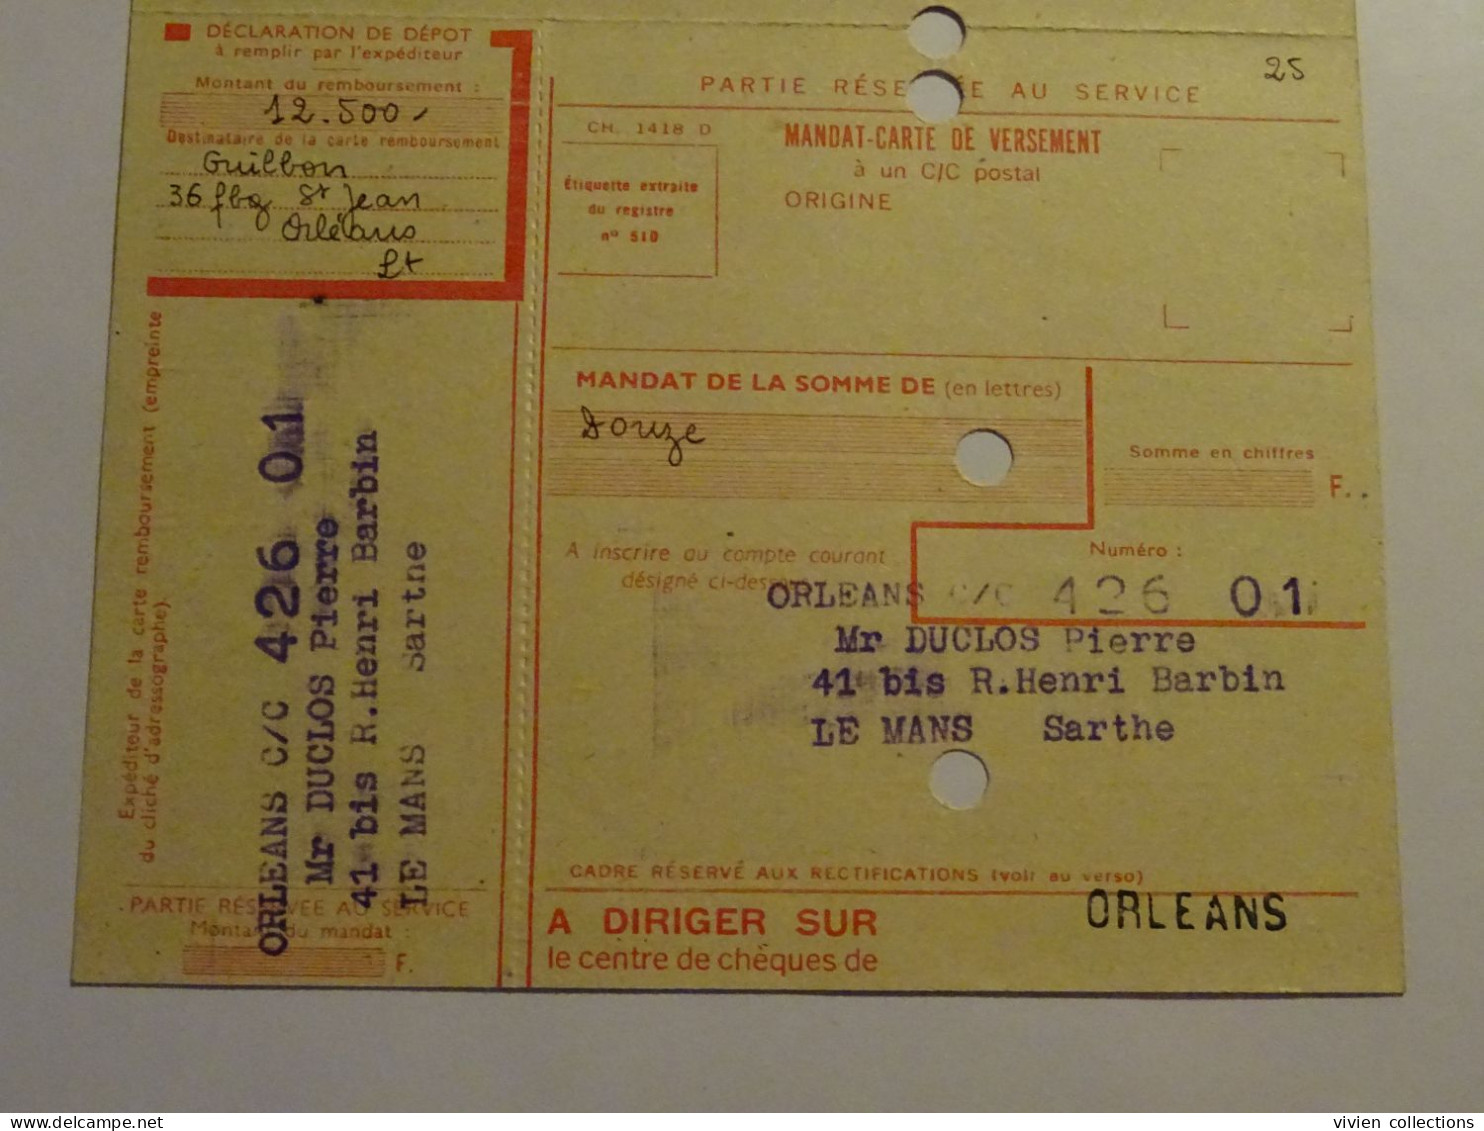 France cours d'instruction pratique Orléans 1954 bordereau et carte contre remboursement pour Le Mans